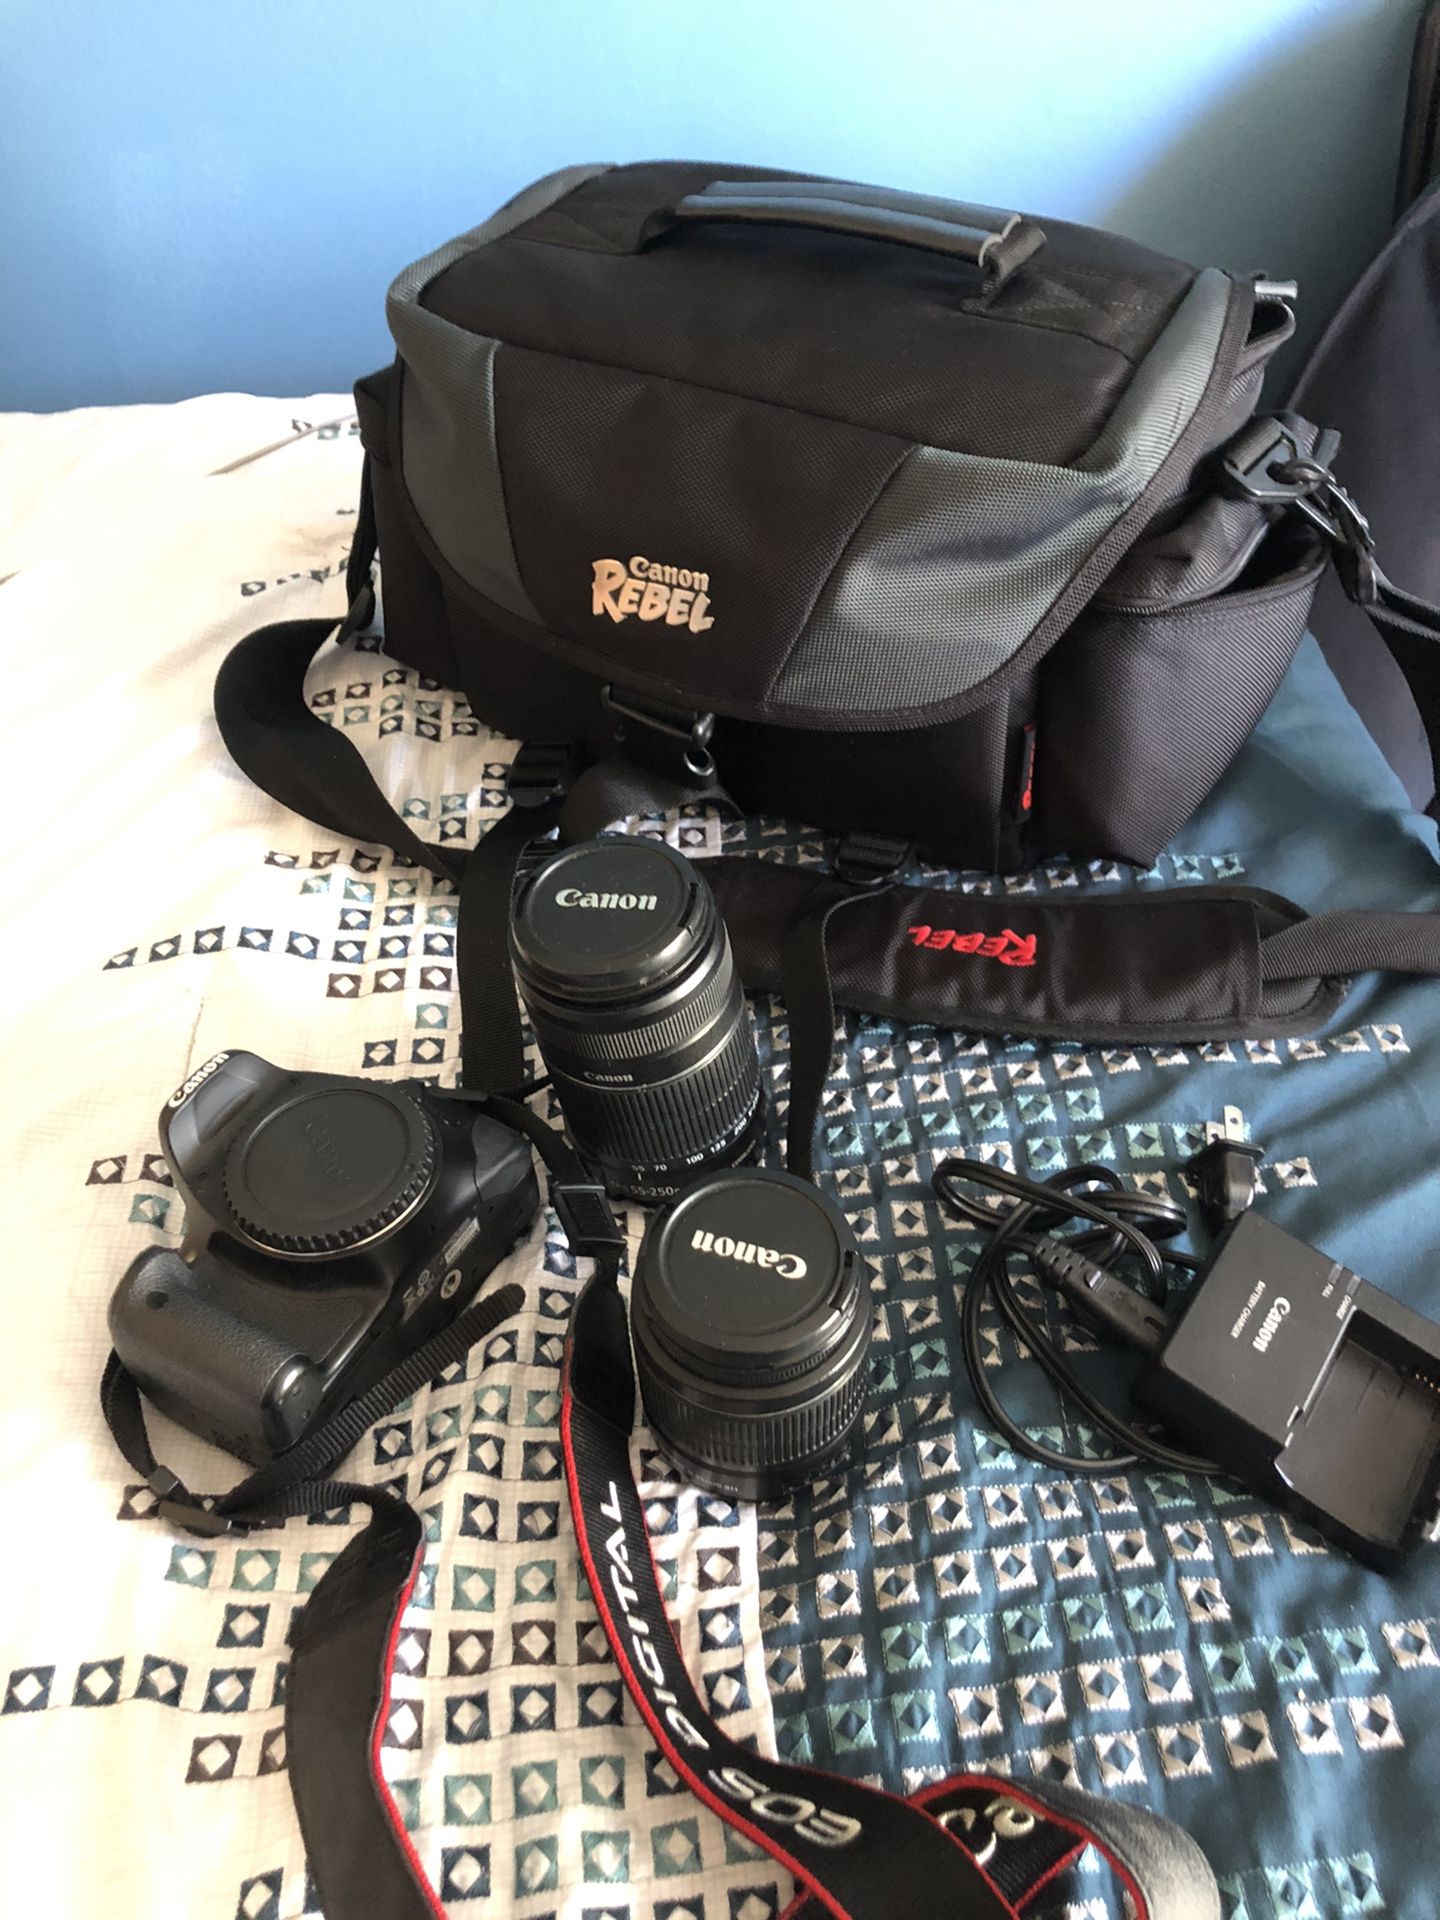 Canon DSLR camera kit